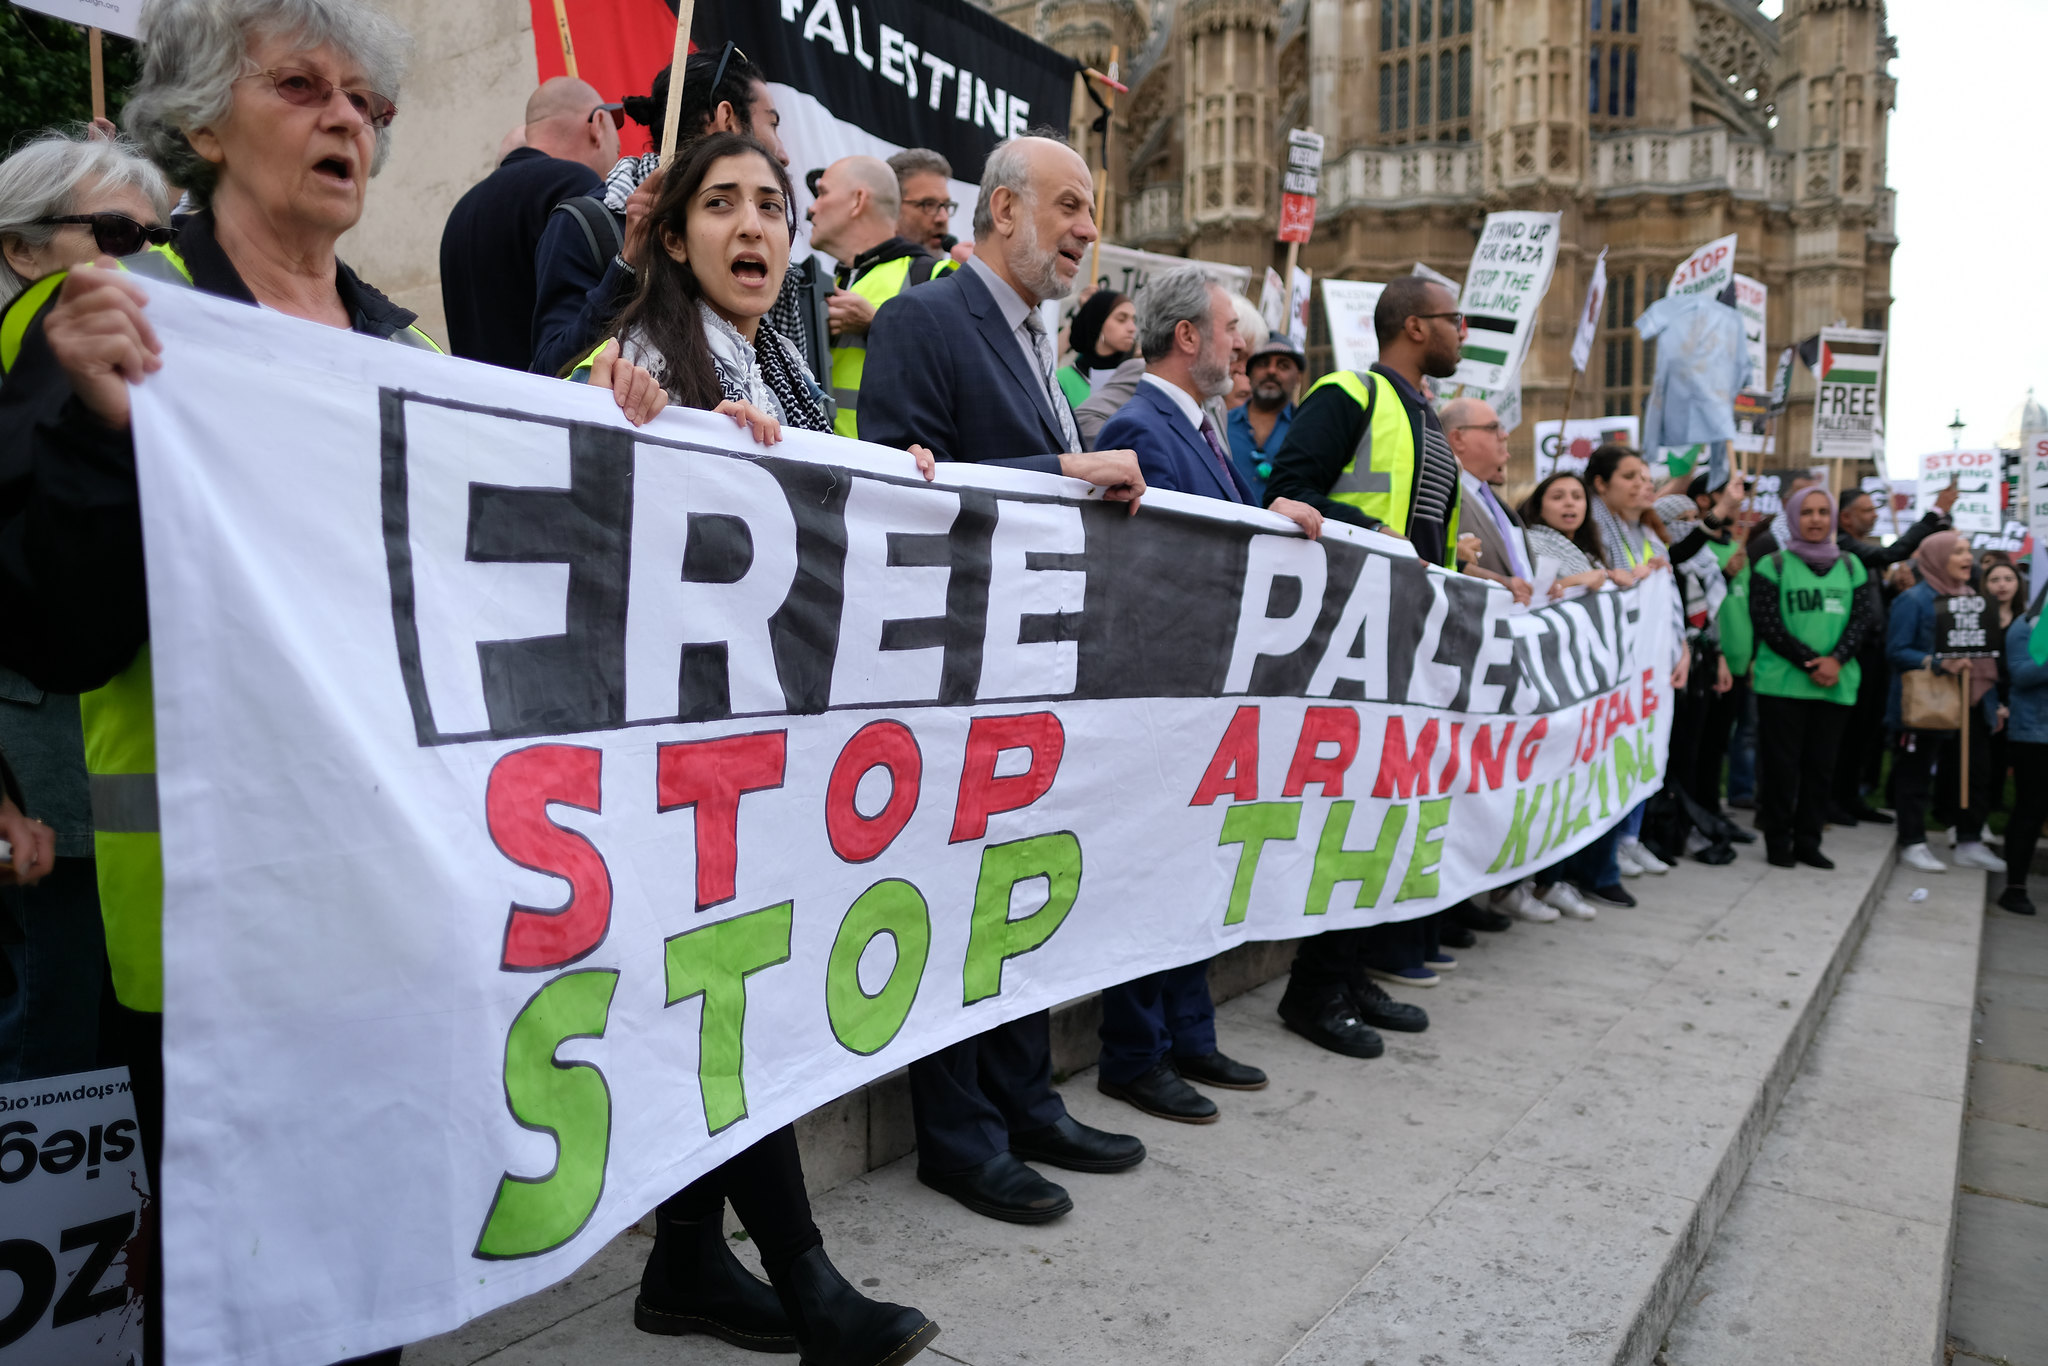 Un grupo de manifestantes protestan en apoyo a Palestina frente al Parlamento británico en junio de 2018. Foto de archivo cortesía de Alisdare Hickson / Flickr